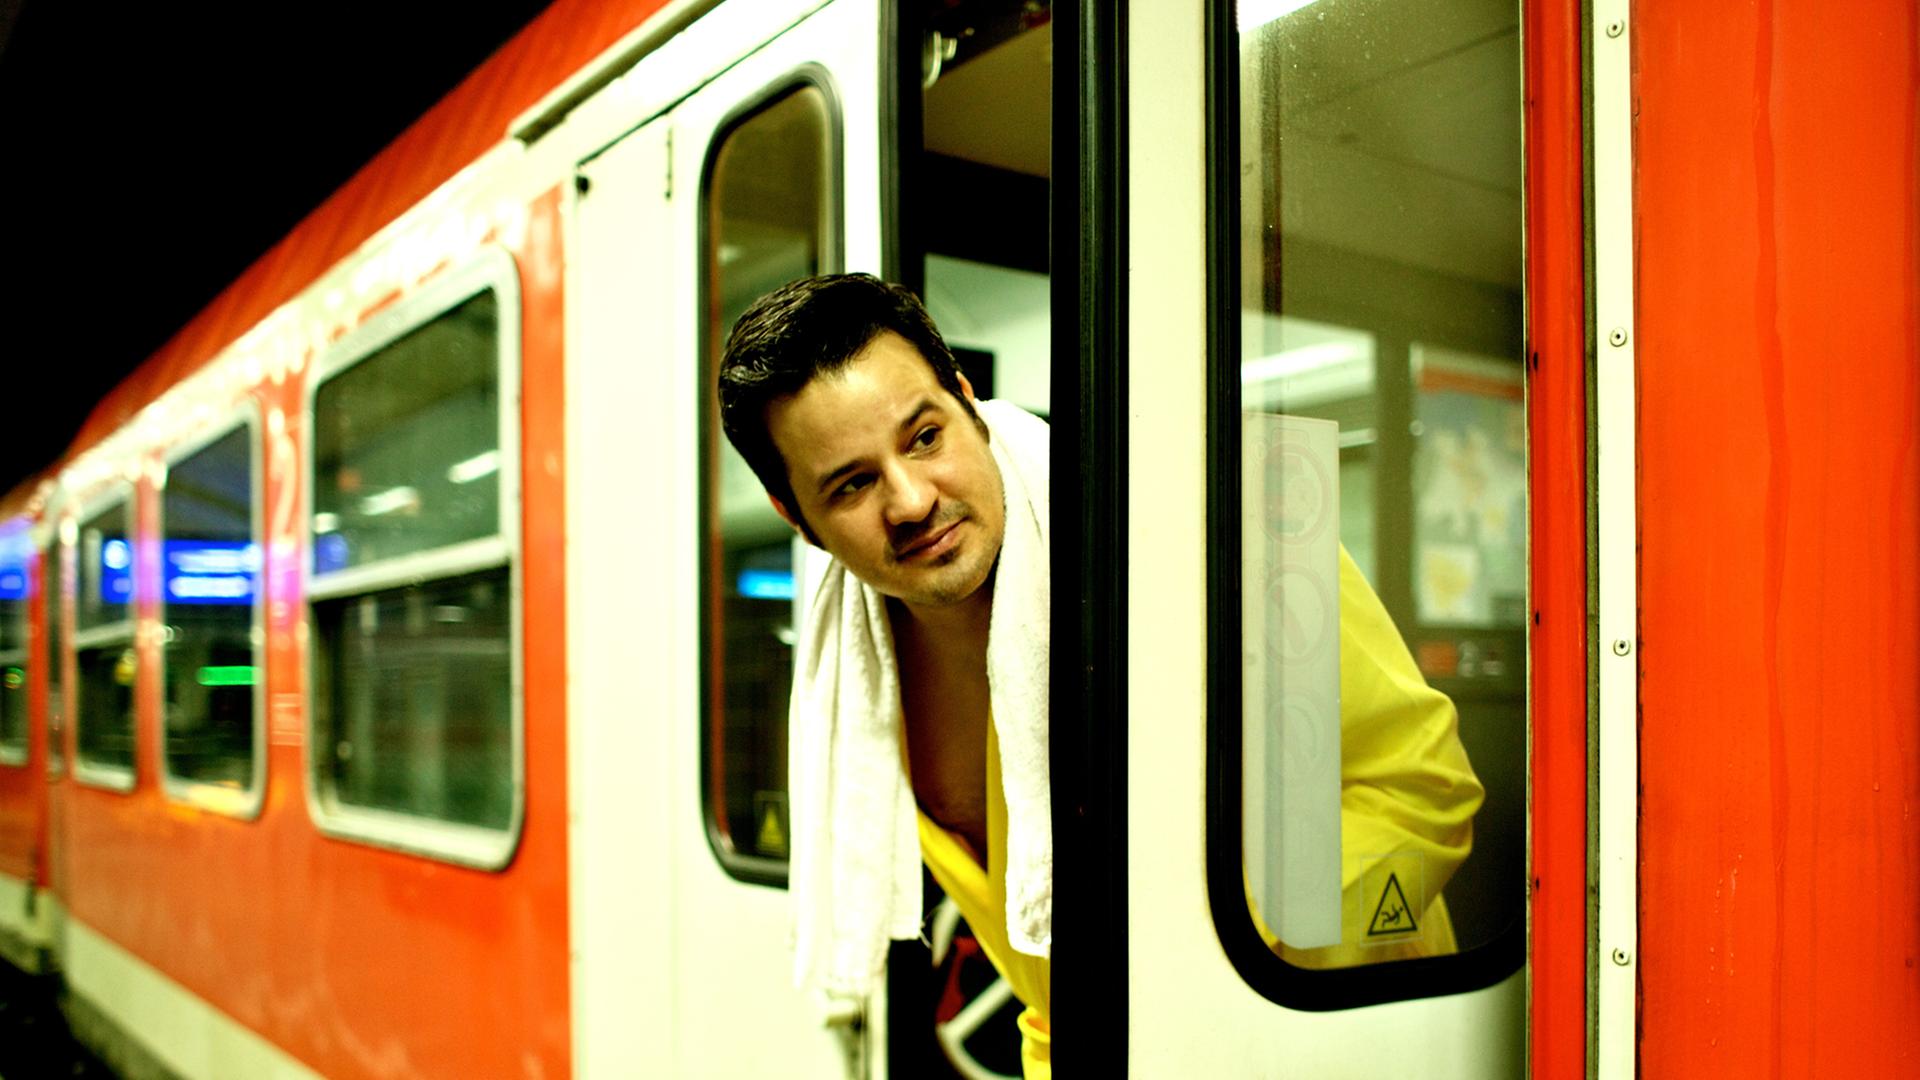 René El Khazraje alias MC Rene zelebriert das Leben im Zug. Auf dem Bild schaut er im Bademantel und Handtuch aus der Tür eines Regionalexpresses der Bahn.